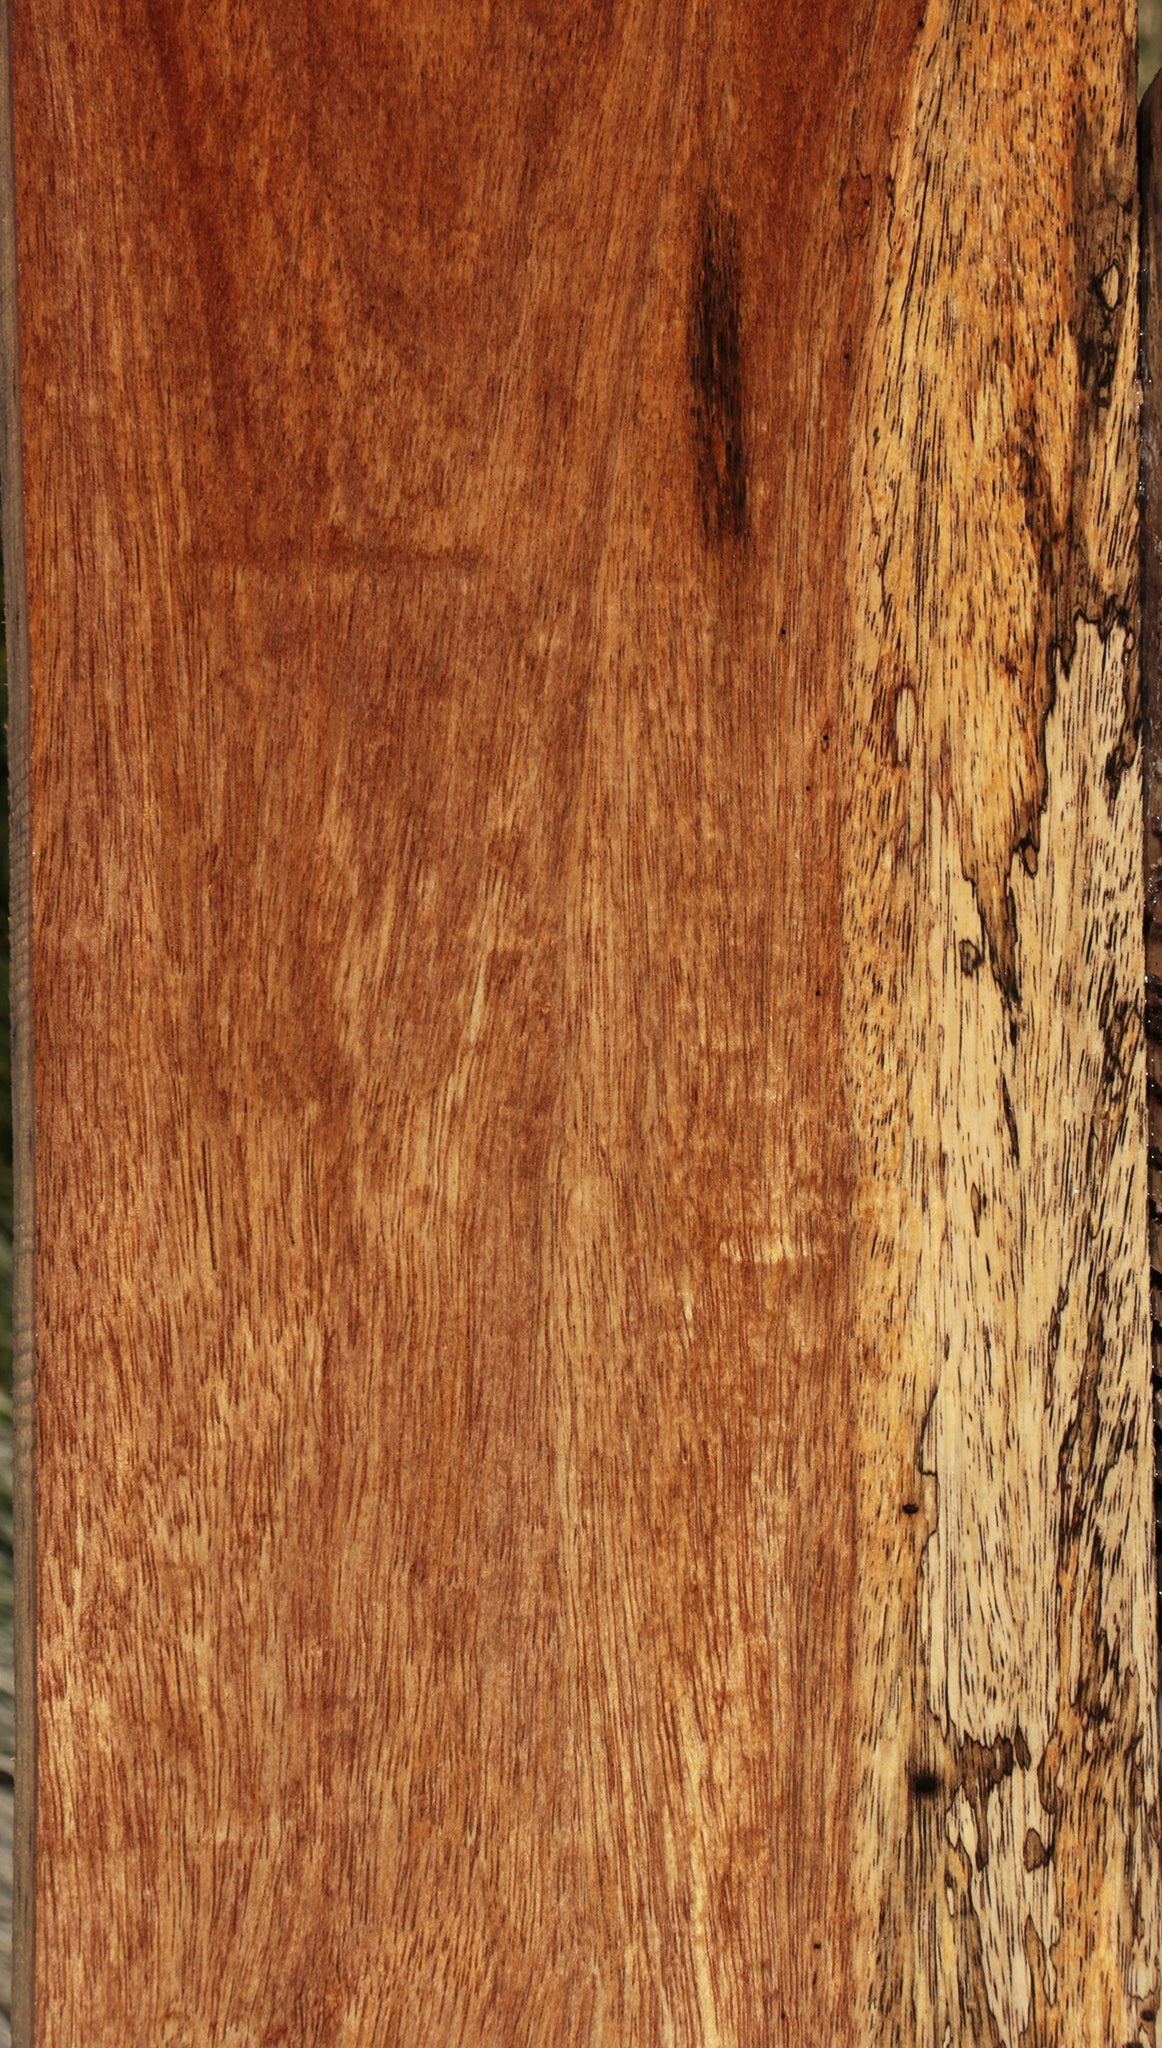 Spalted Colorado Manzano Lumber